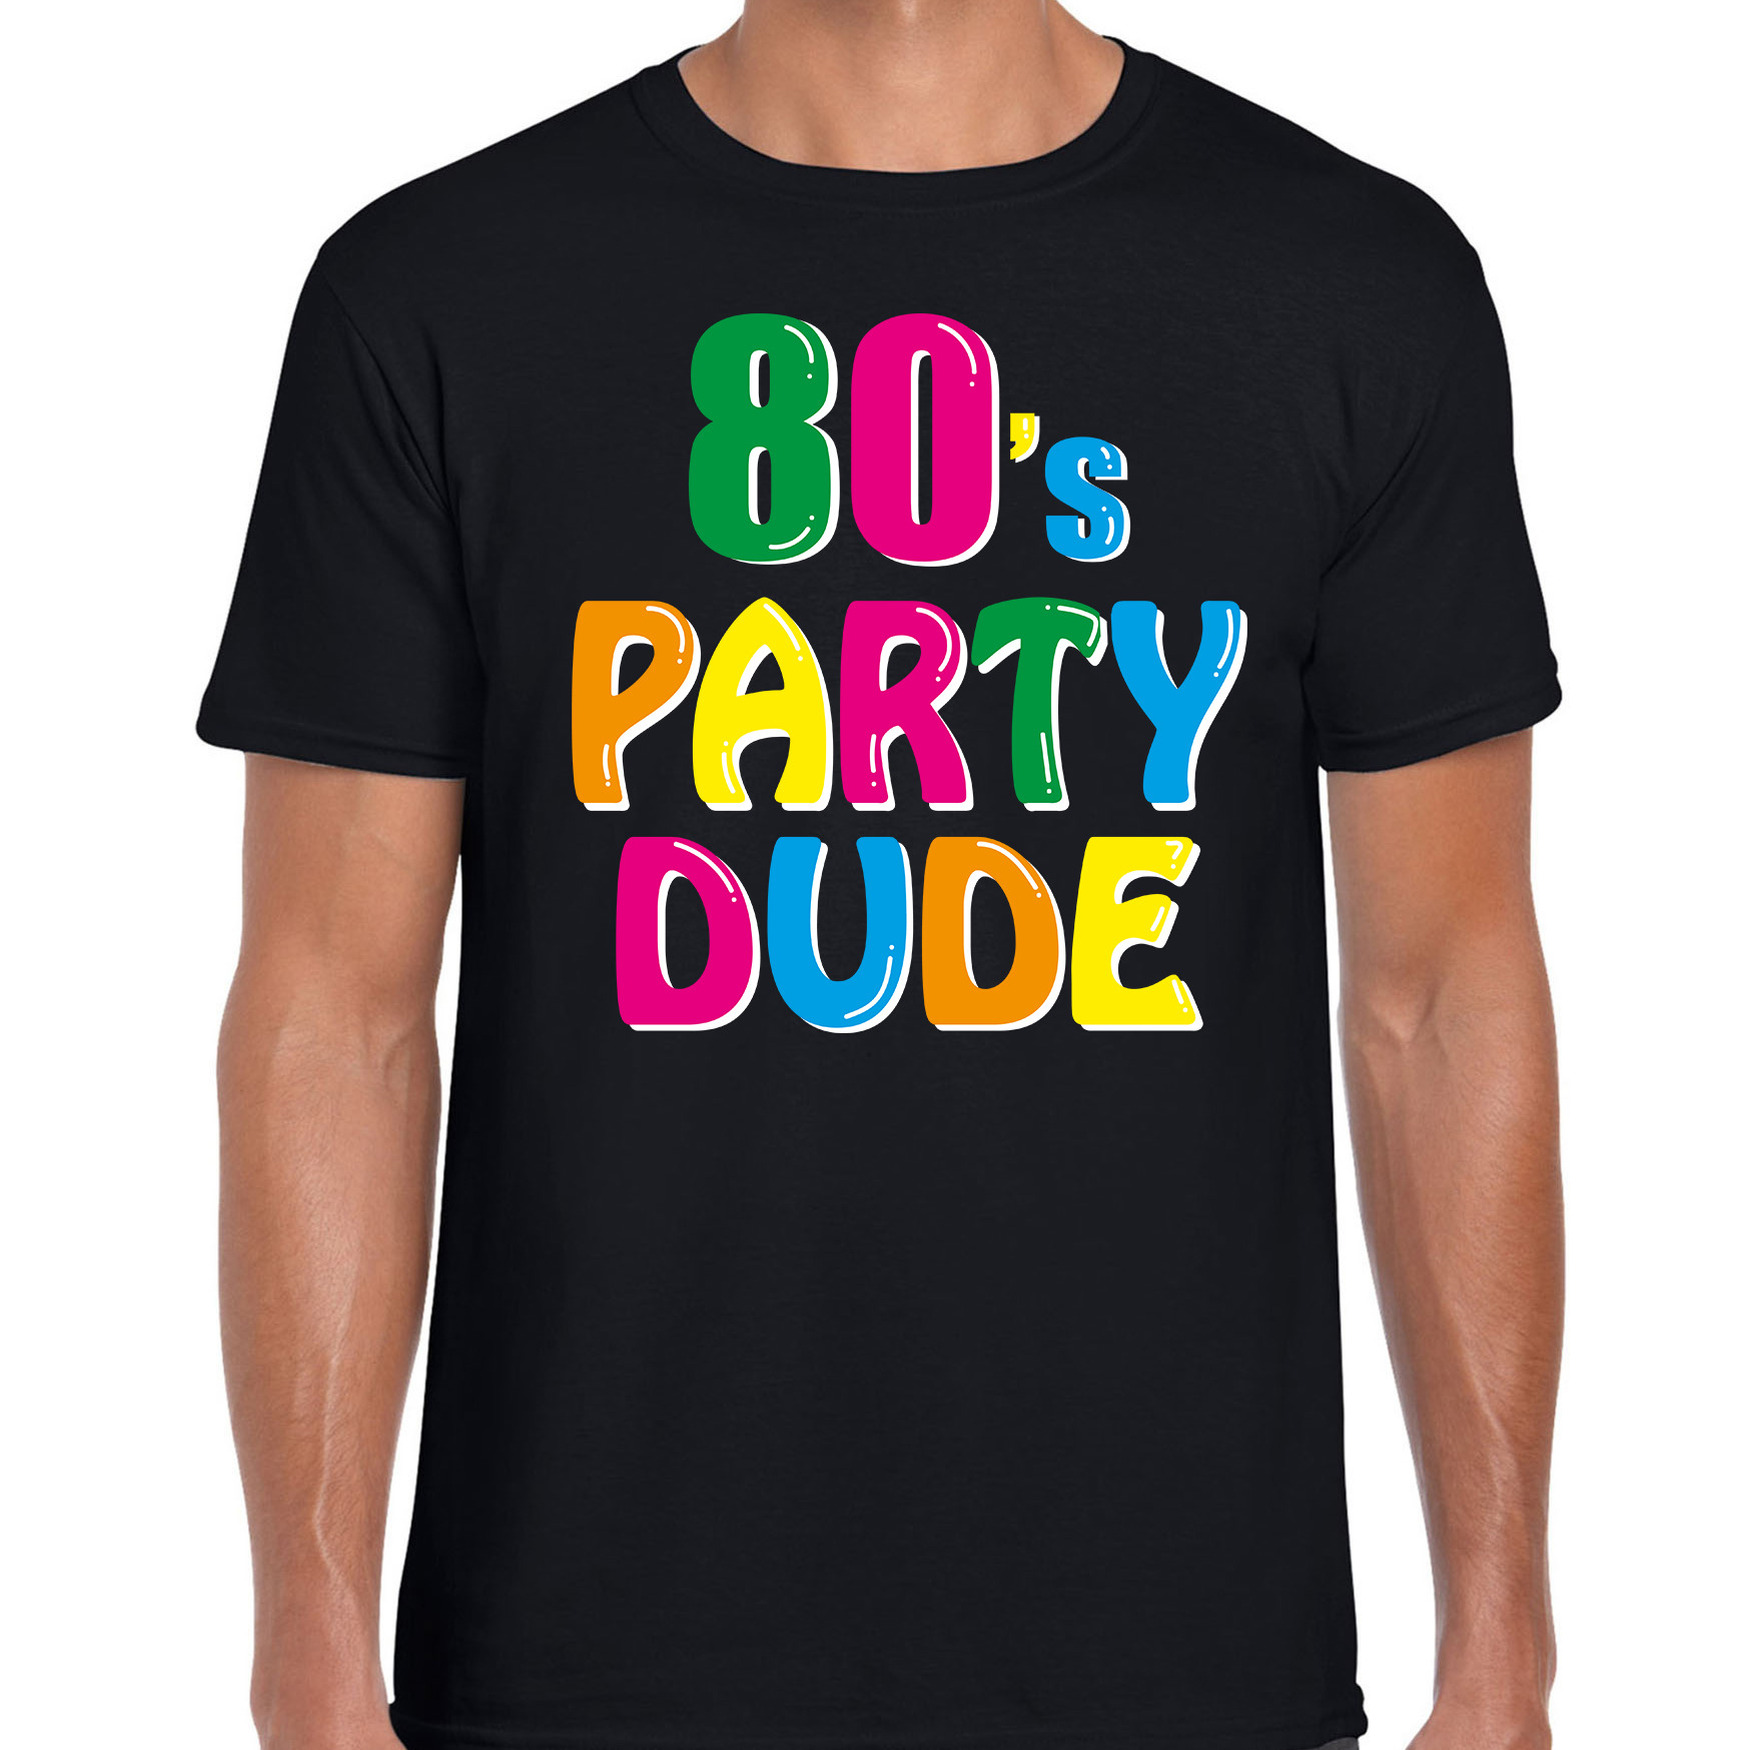 Eighties / 80s party dude verkleed feest t-shirt zwart voor heren - Jaren 80 / tachtig verkleden